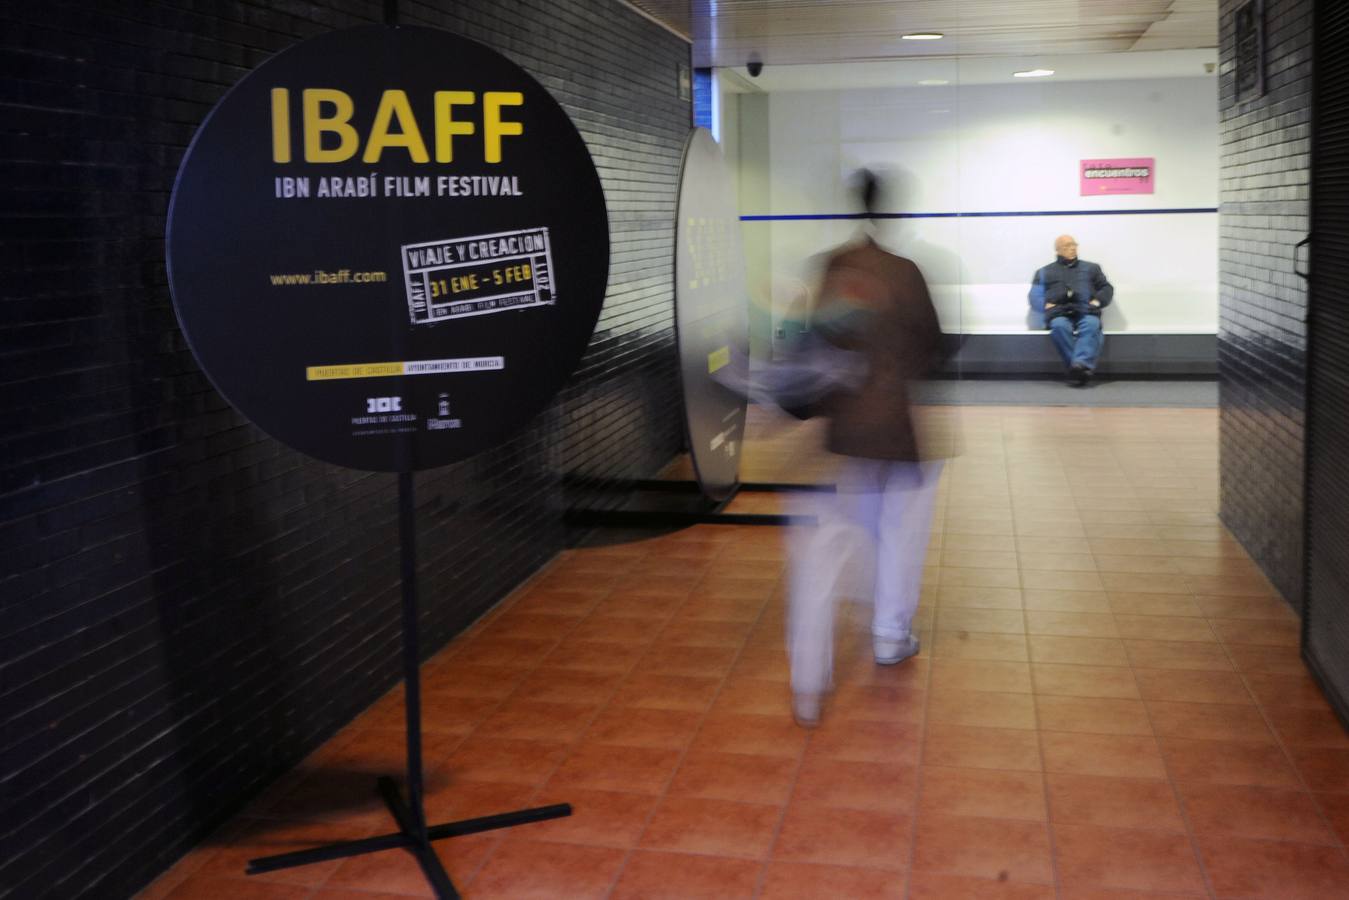 El festival de cine IBAFF abre el periodo de inscripción para la próxima edición